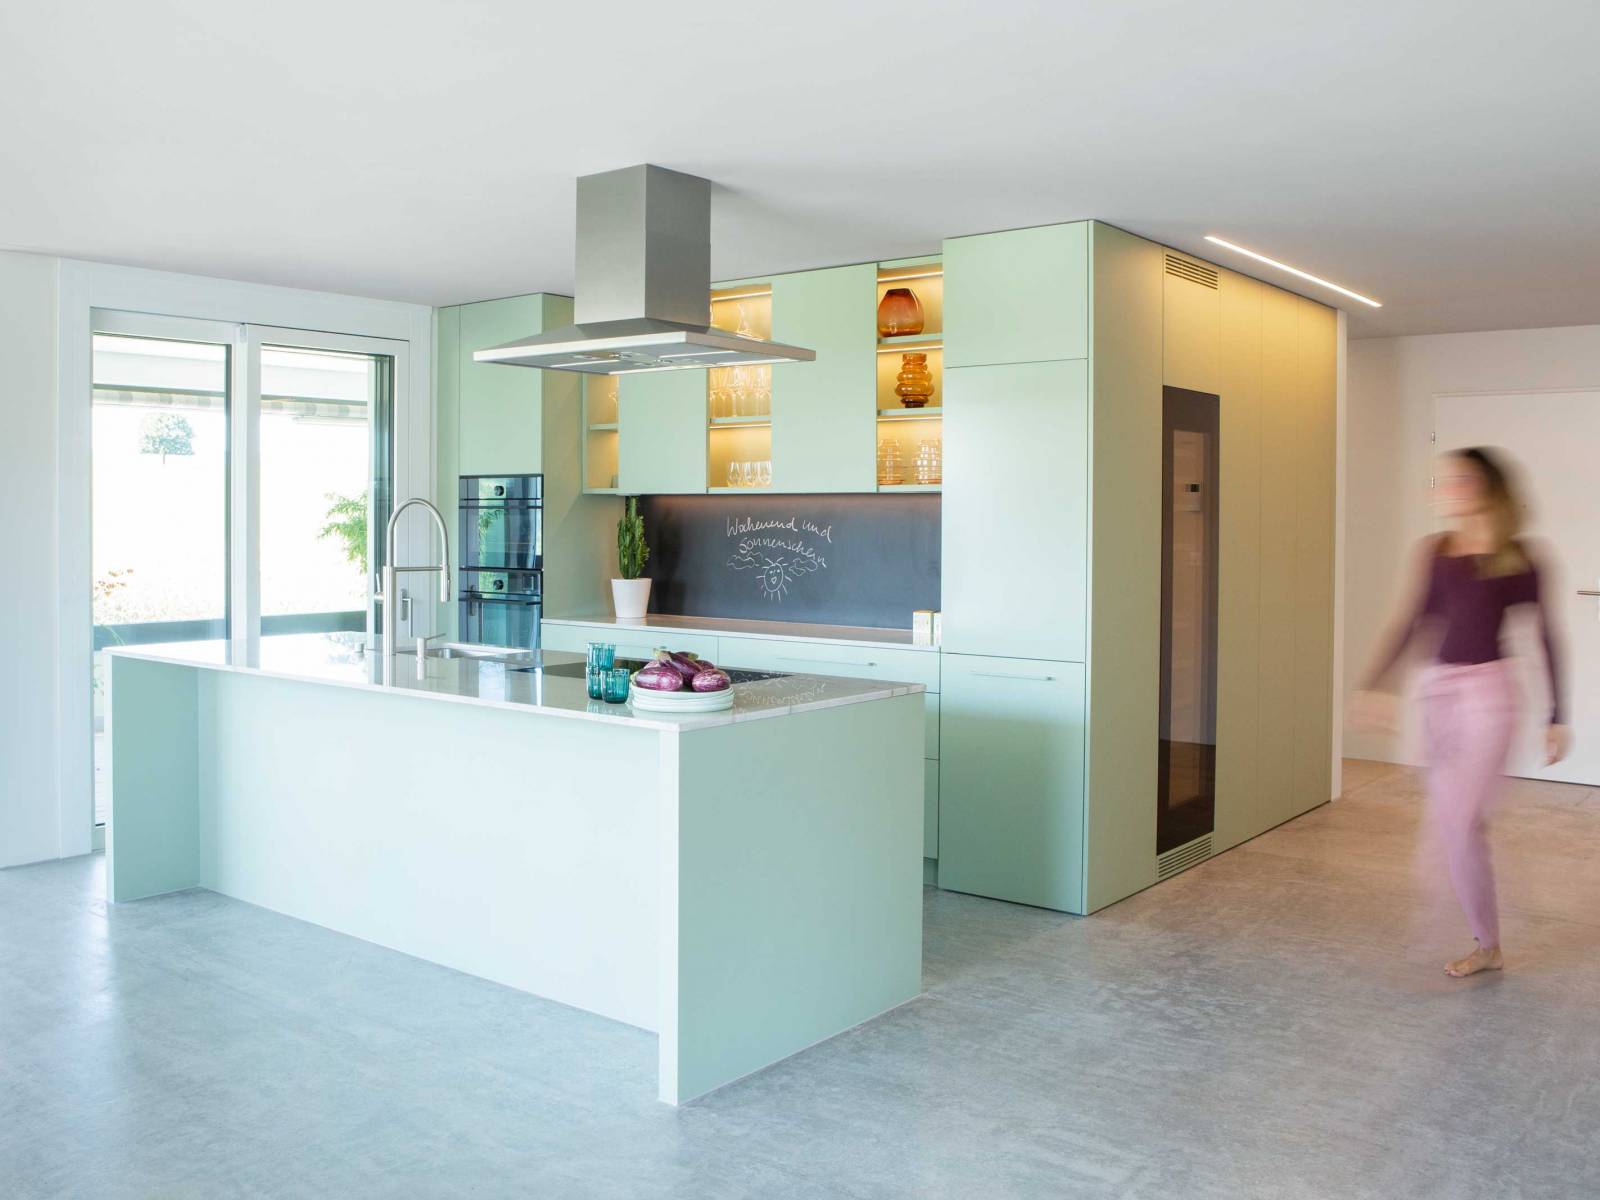 Bei dieser auf Mass gefertigten Küche des Appenzeller Unternehmens sind nicht nur die Oberschränke mit einem spannenden Mix aus geschlossenen und offenen Flächen, die beschreibbare Rückwand, sowie die stimmungsvolle dimmbare Beleuchtung nennenswert. Vor allem ist es der trendige Farbton Pistaziengrün, der jeden Tag für gute Laune sorgt. ELBAU. Foto: © Klaus Andorfer.